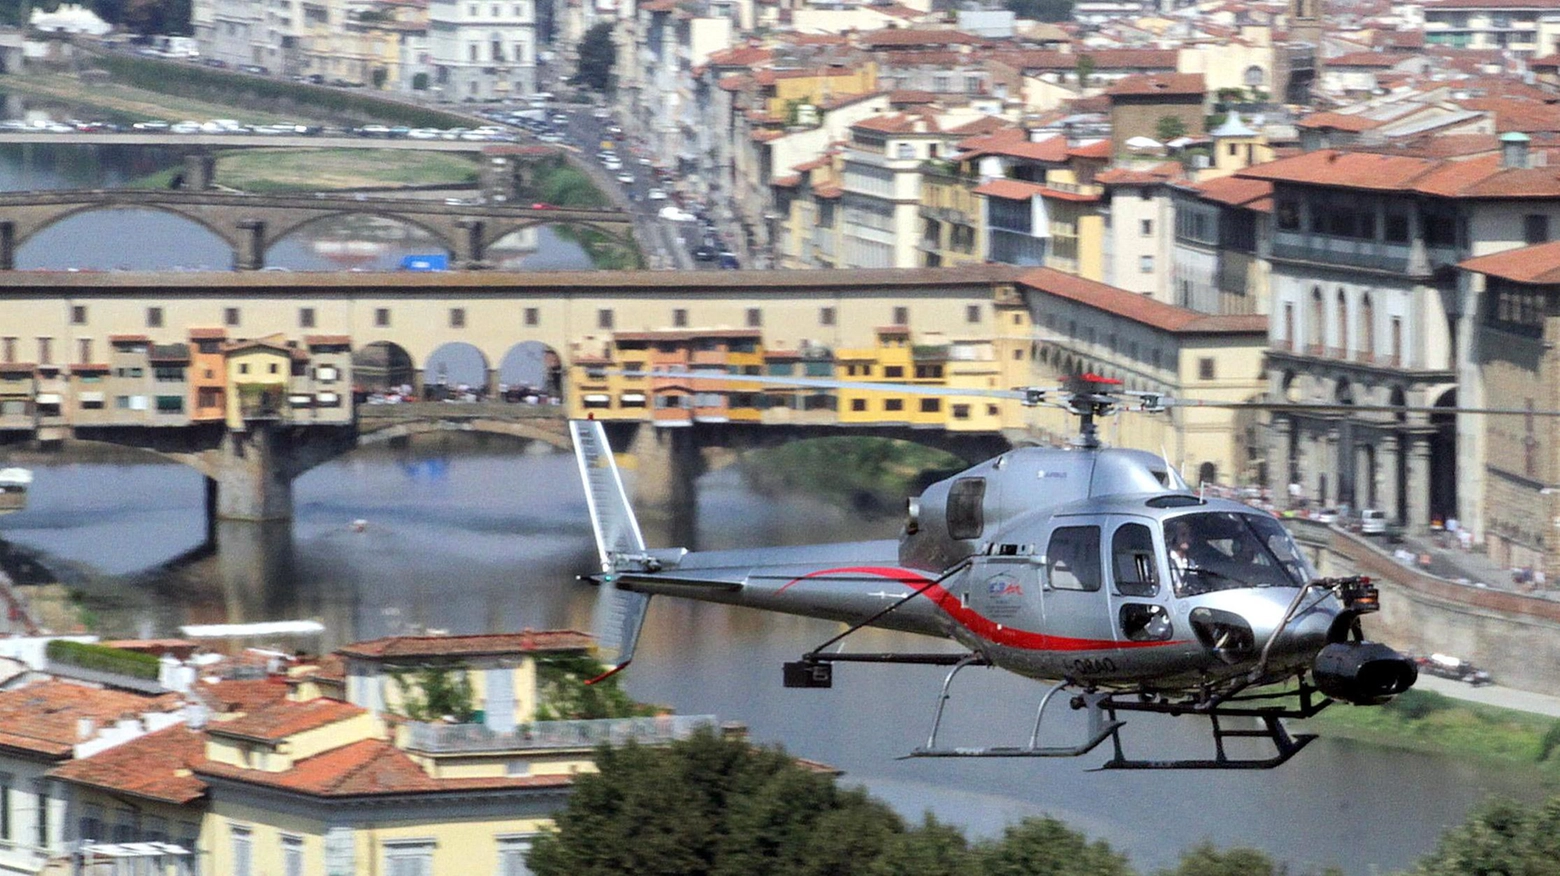 Elicotteri sopra Firenze  Nardella tira dritto  "Un protocollo comune  per i sorvoli turistici"